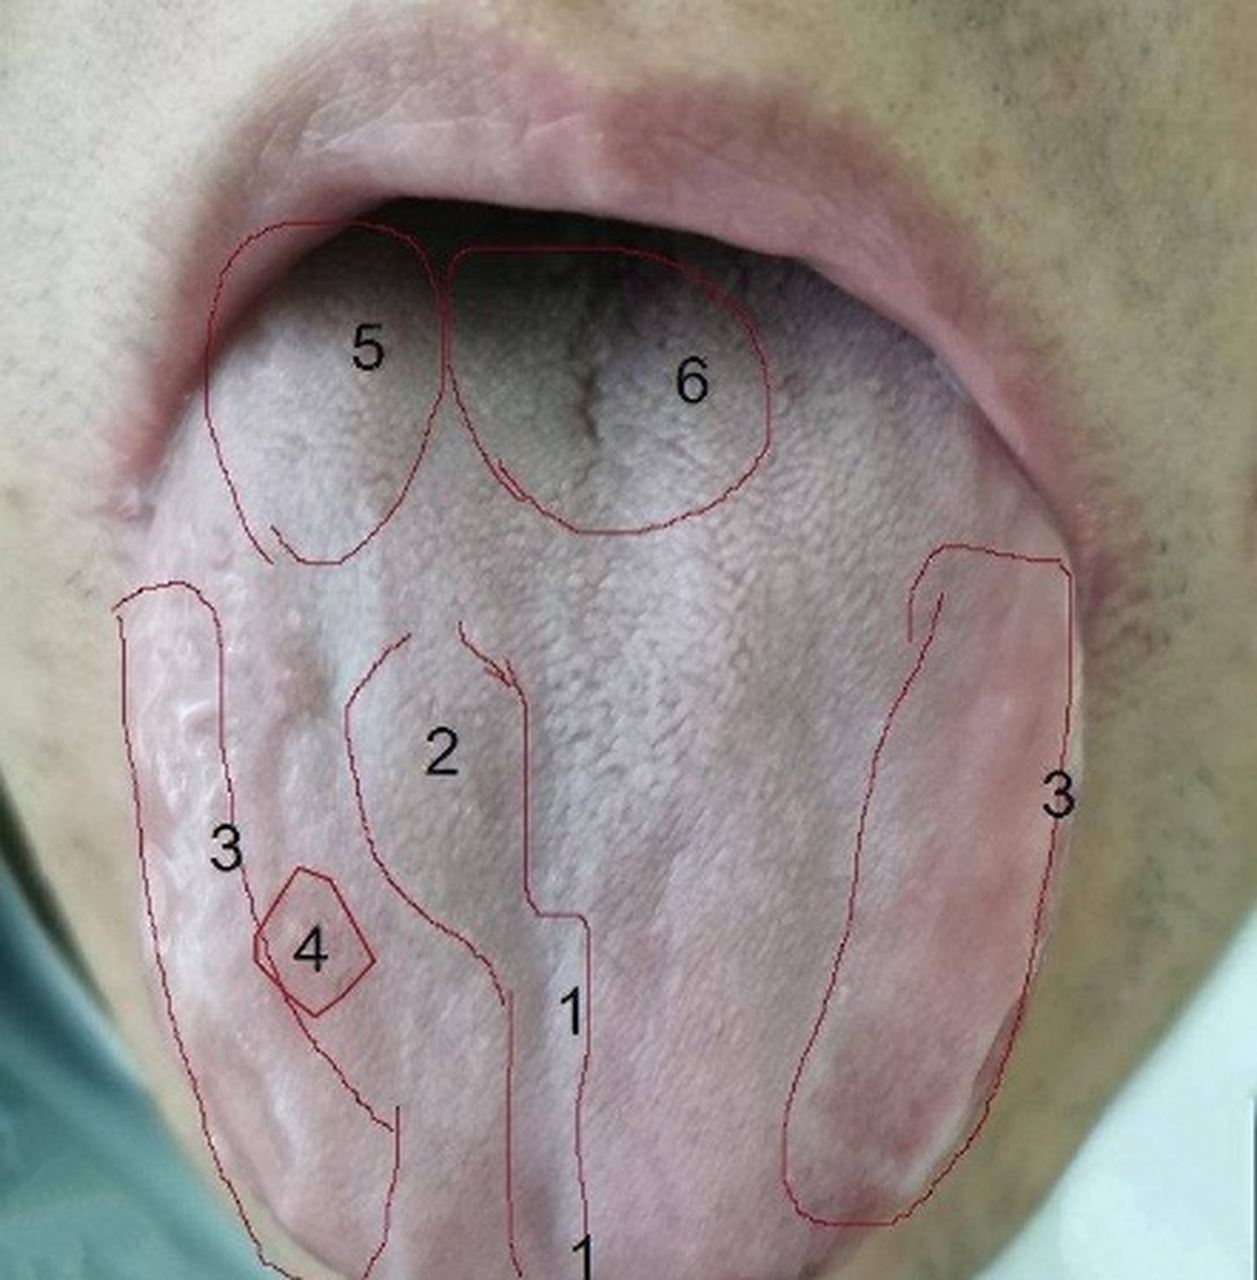 六区,巧妙学习舌相02020202  1号区域向下凹陷,说明肺气不足